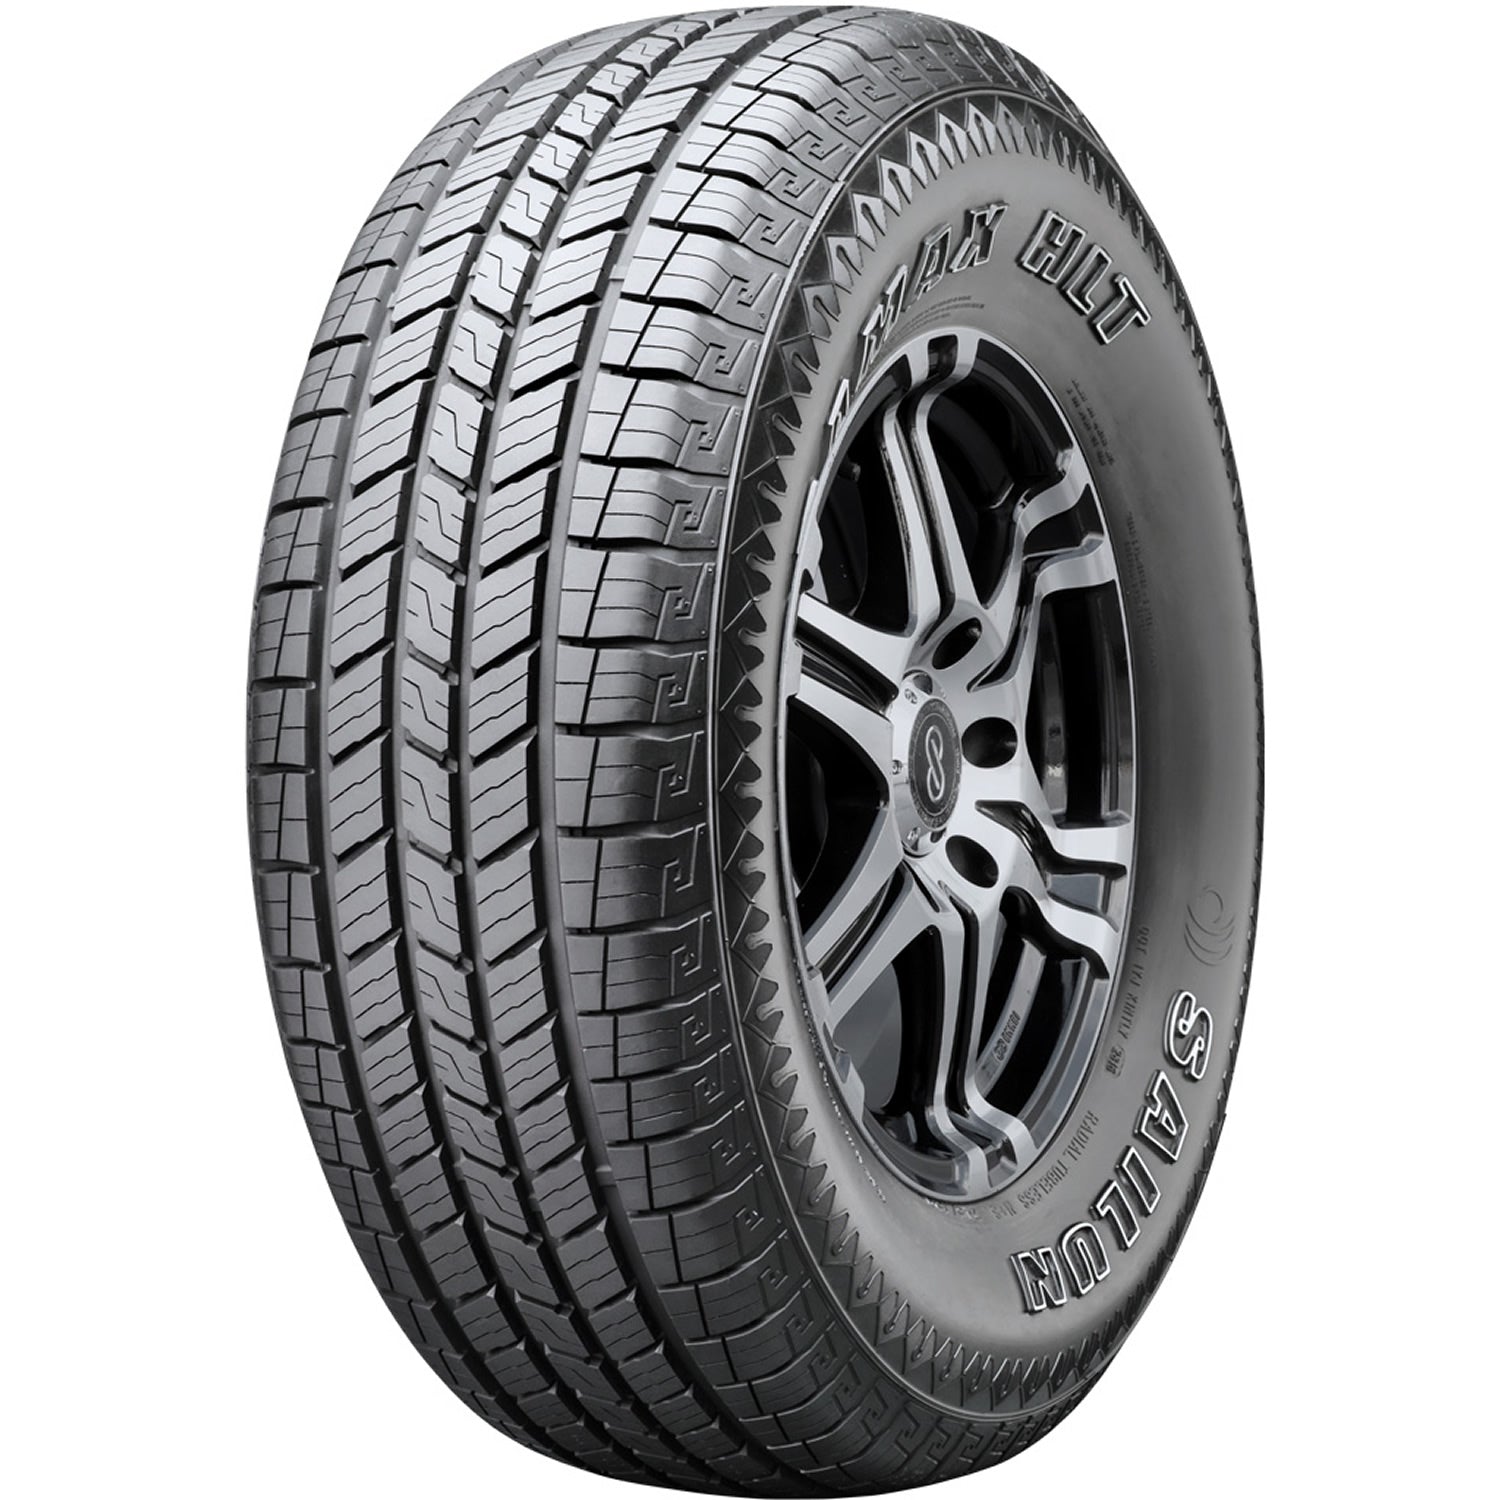 SAILUN TERRAMAX HLT 245/70R16 (29.5X9.8R 16) Tires